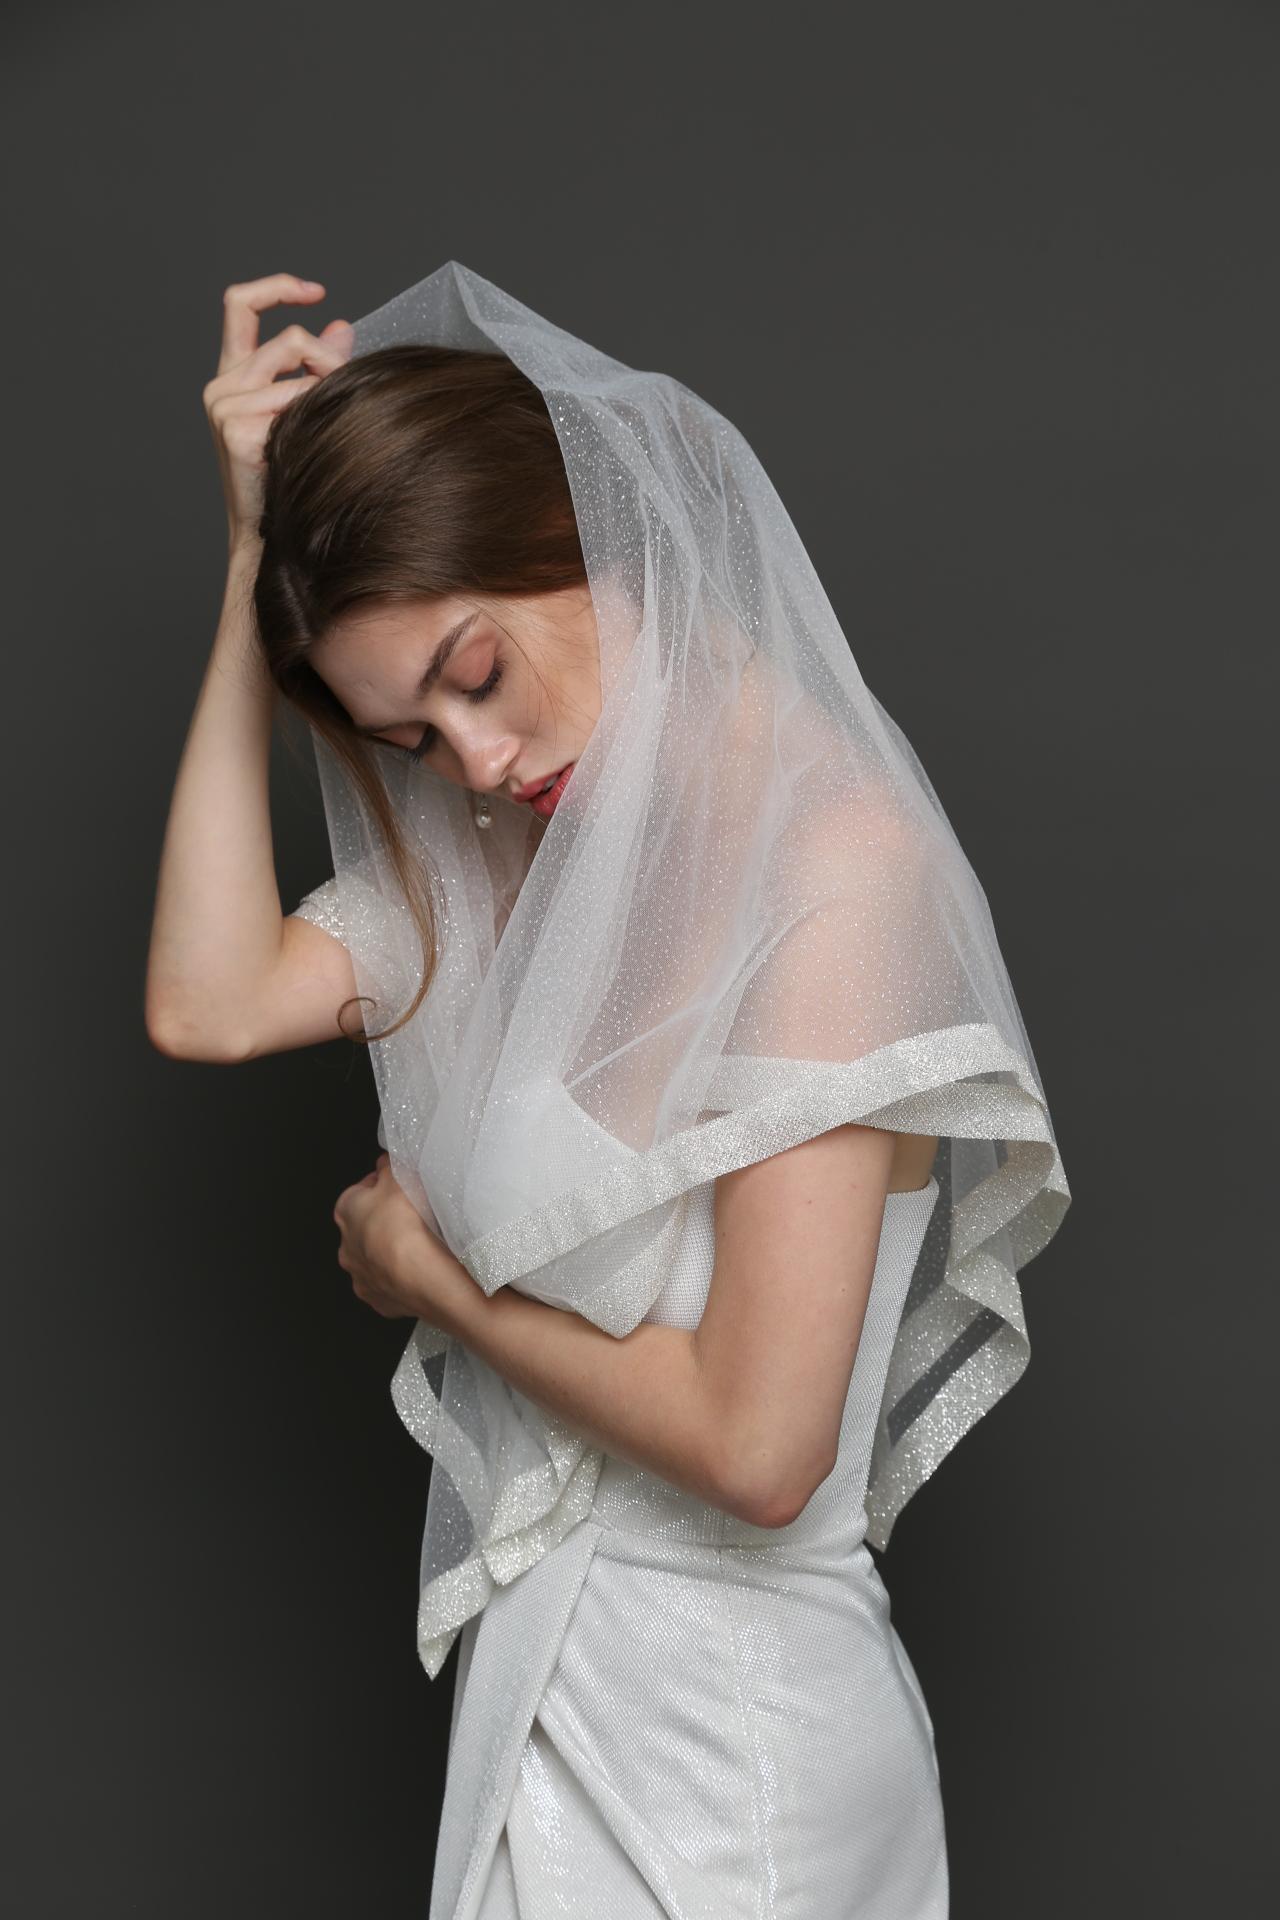 Капоры (ниспадающий платок) накидка для венчания